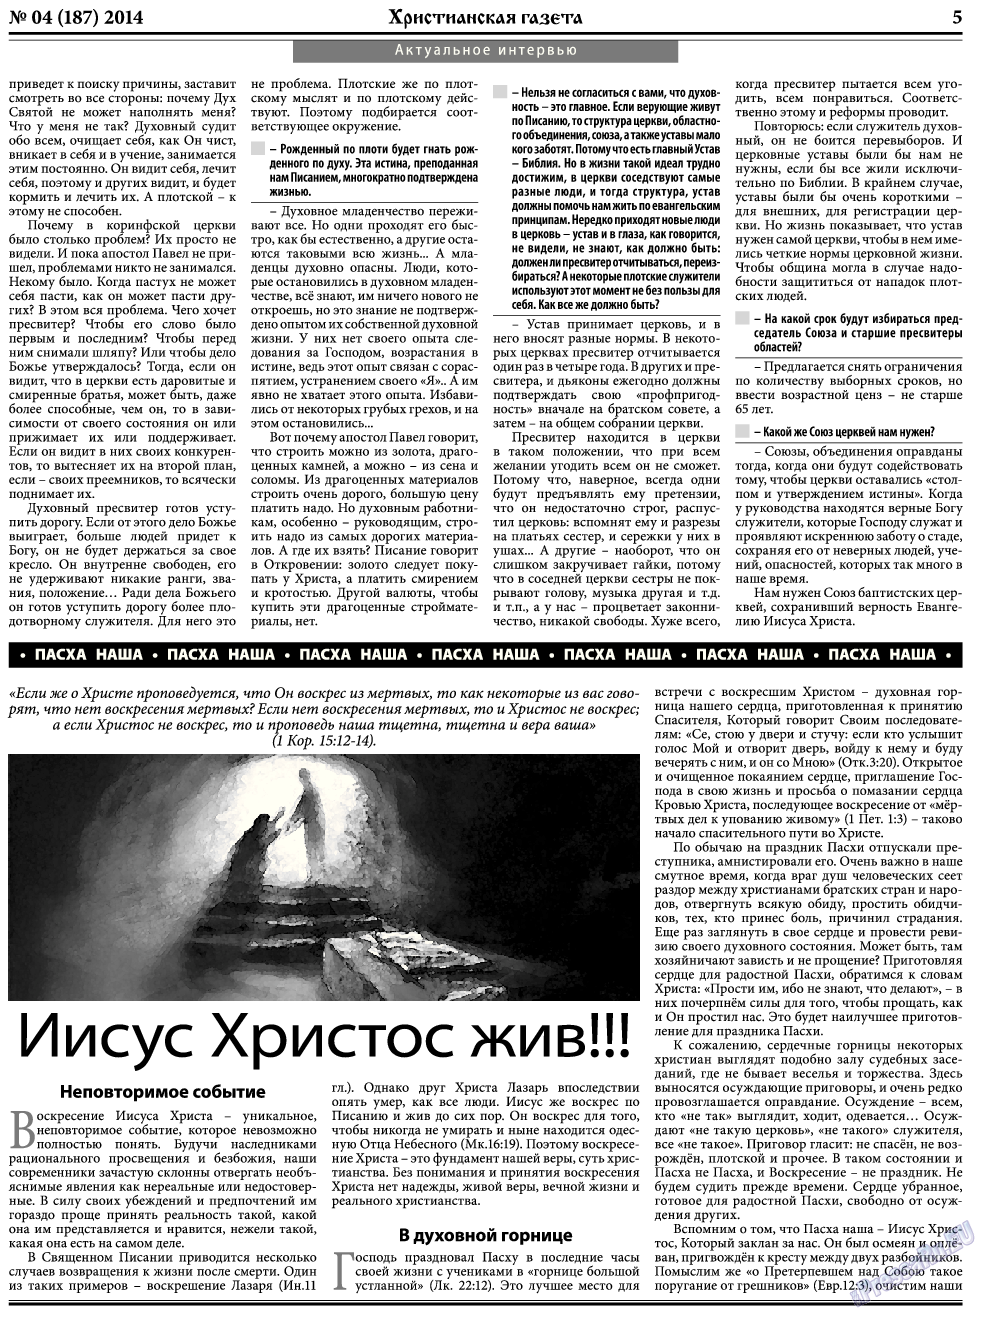 Христианская газета, газета. 2014 №4 стр.5